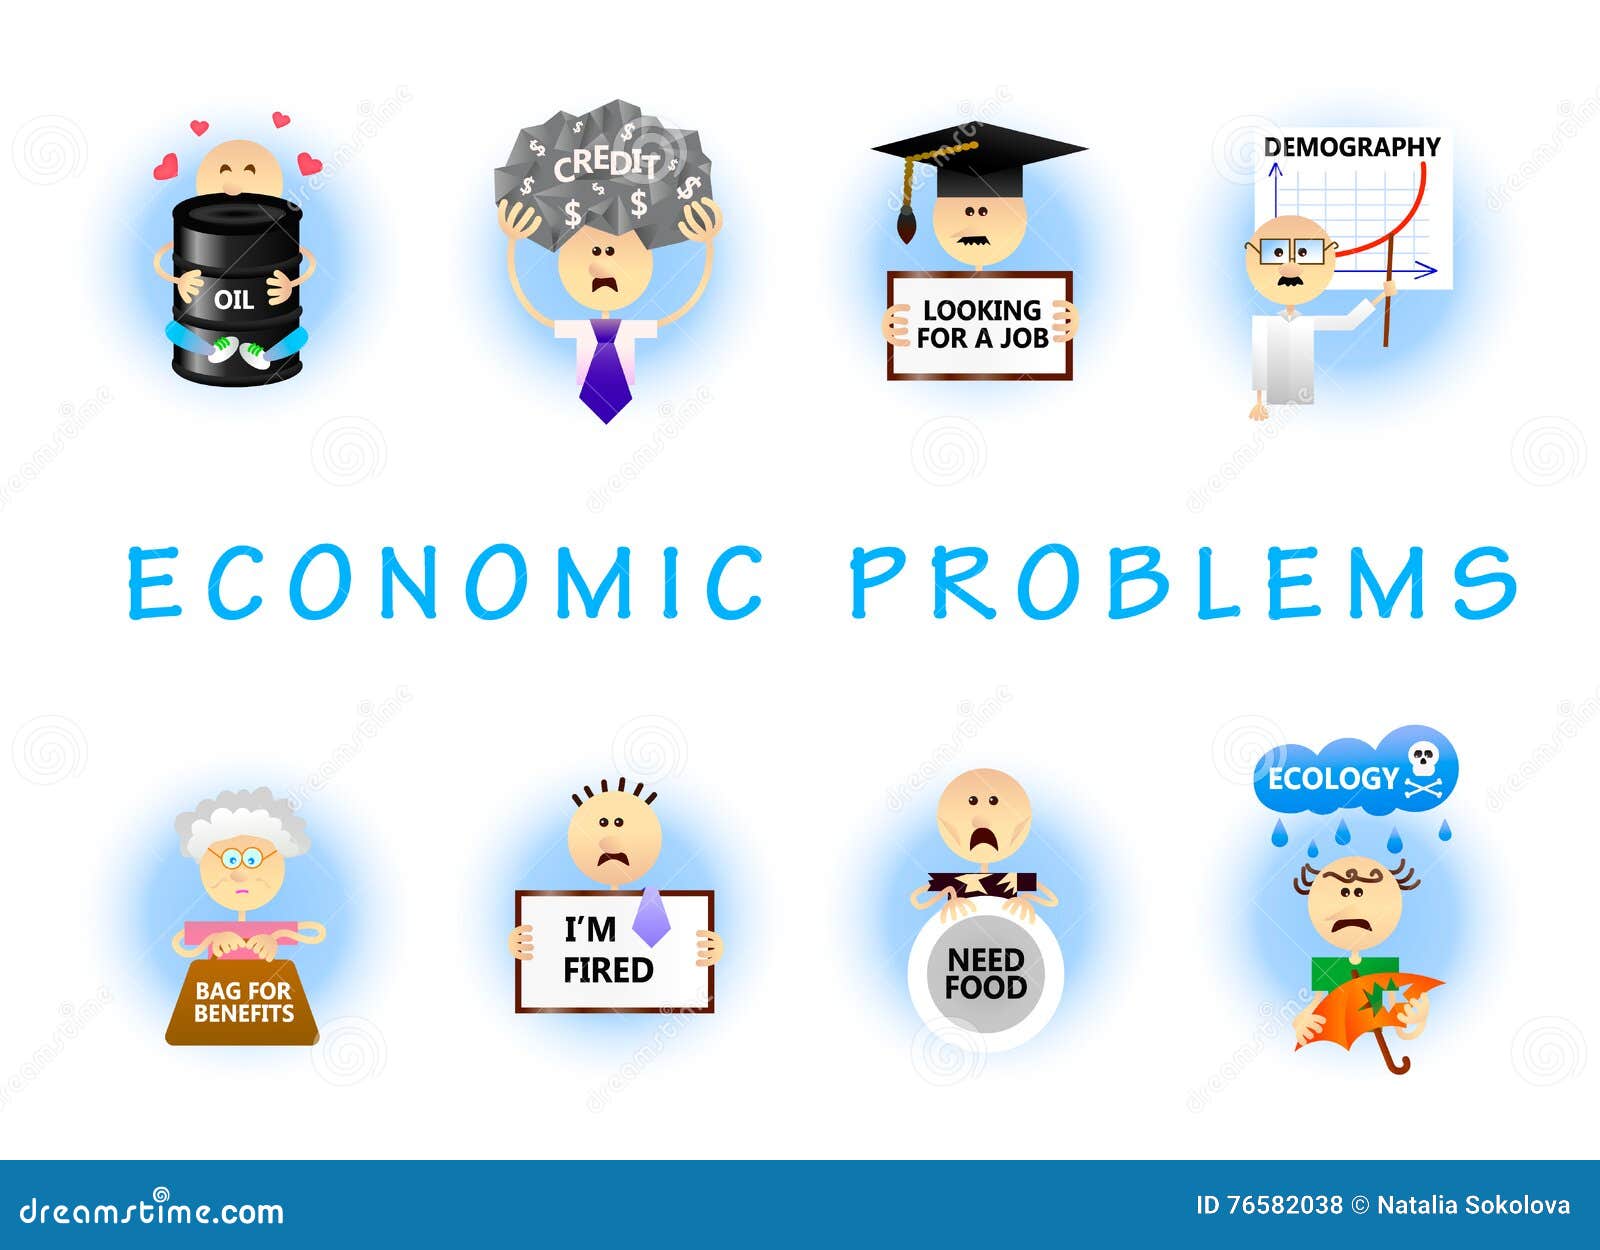 economics problems